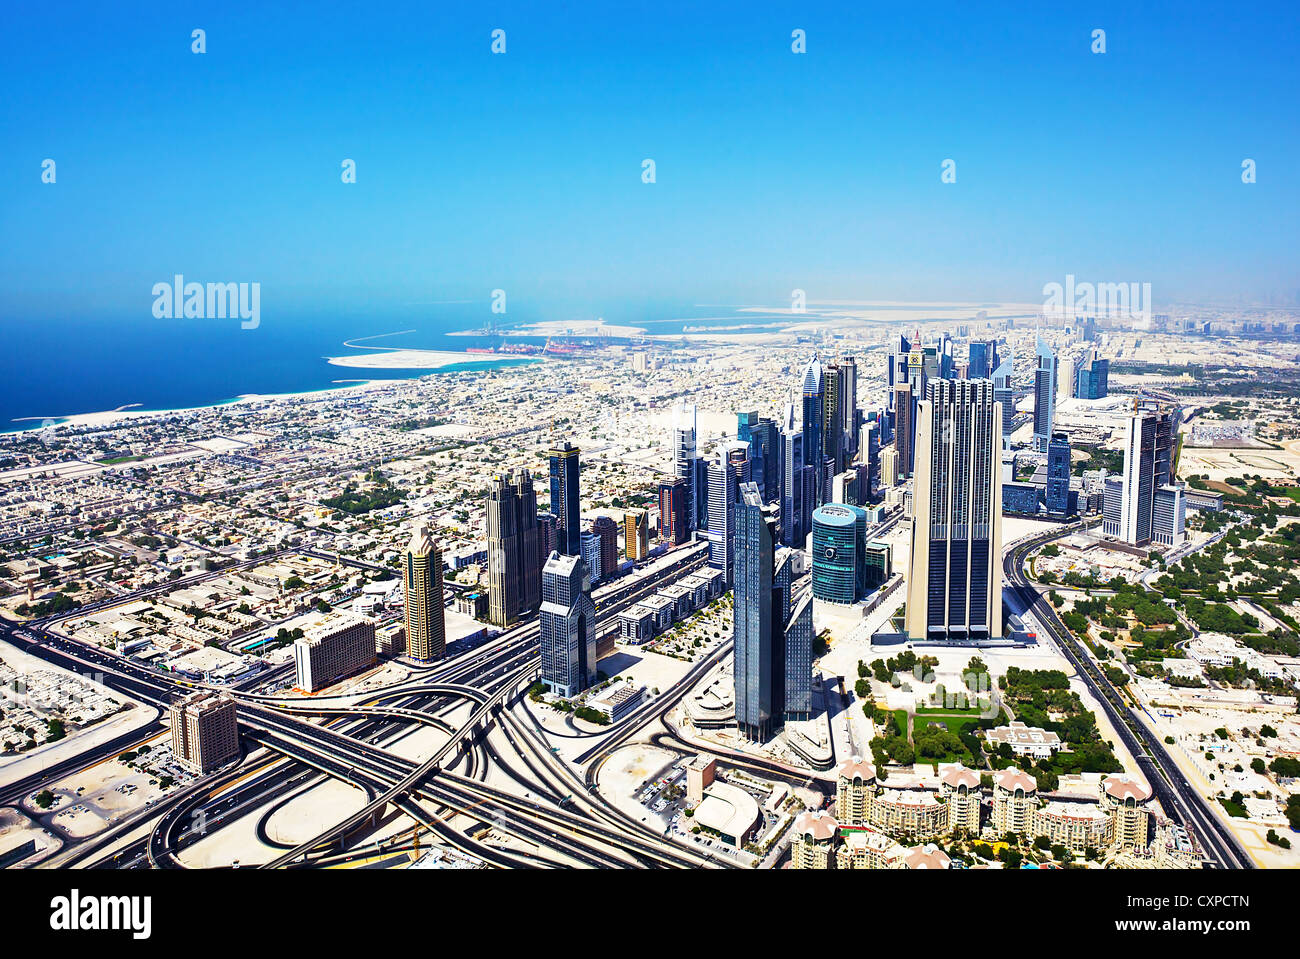 Immagine del centro cittadino di Dubai, vista dall'alto della città di Dubai, business industria, edifici di lusso, Emirati arabi uniti, arabo strada urbana Foto Stock